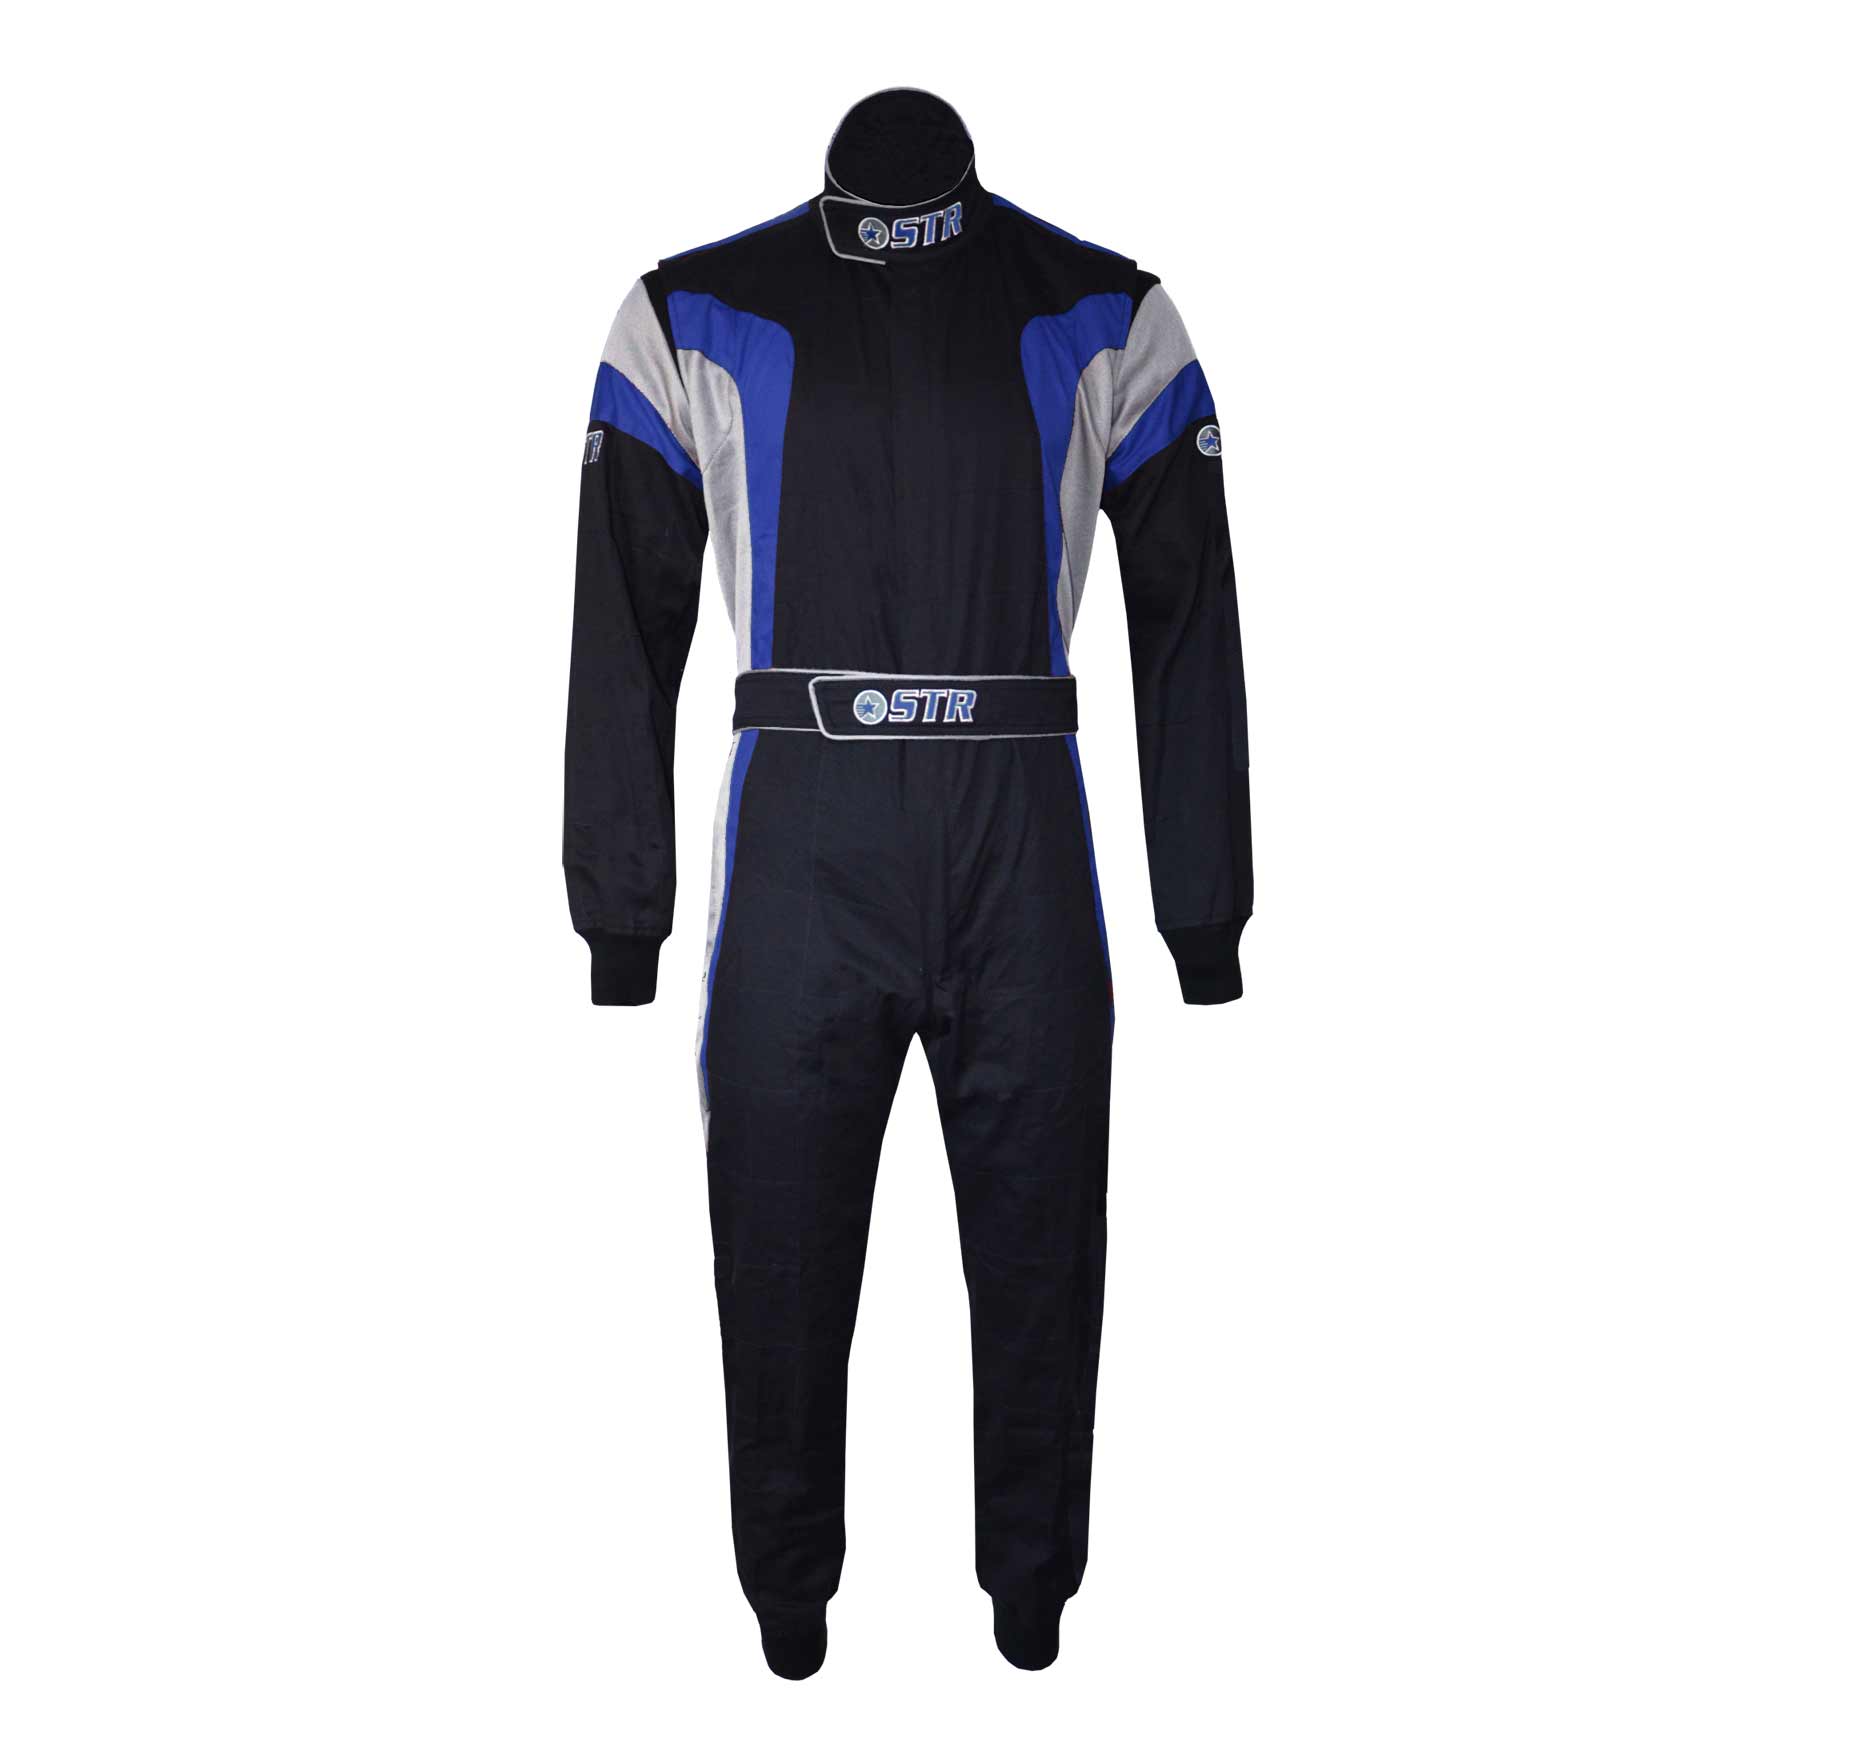 STR 'Podium' Race Suit - Black/Blue/White